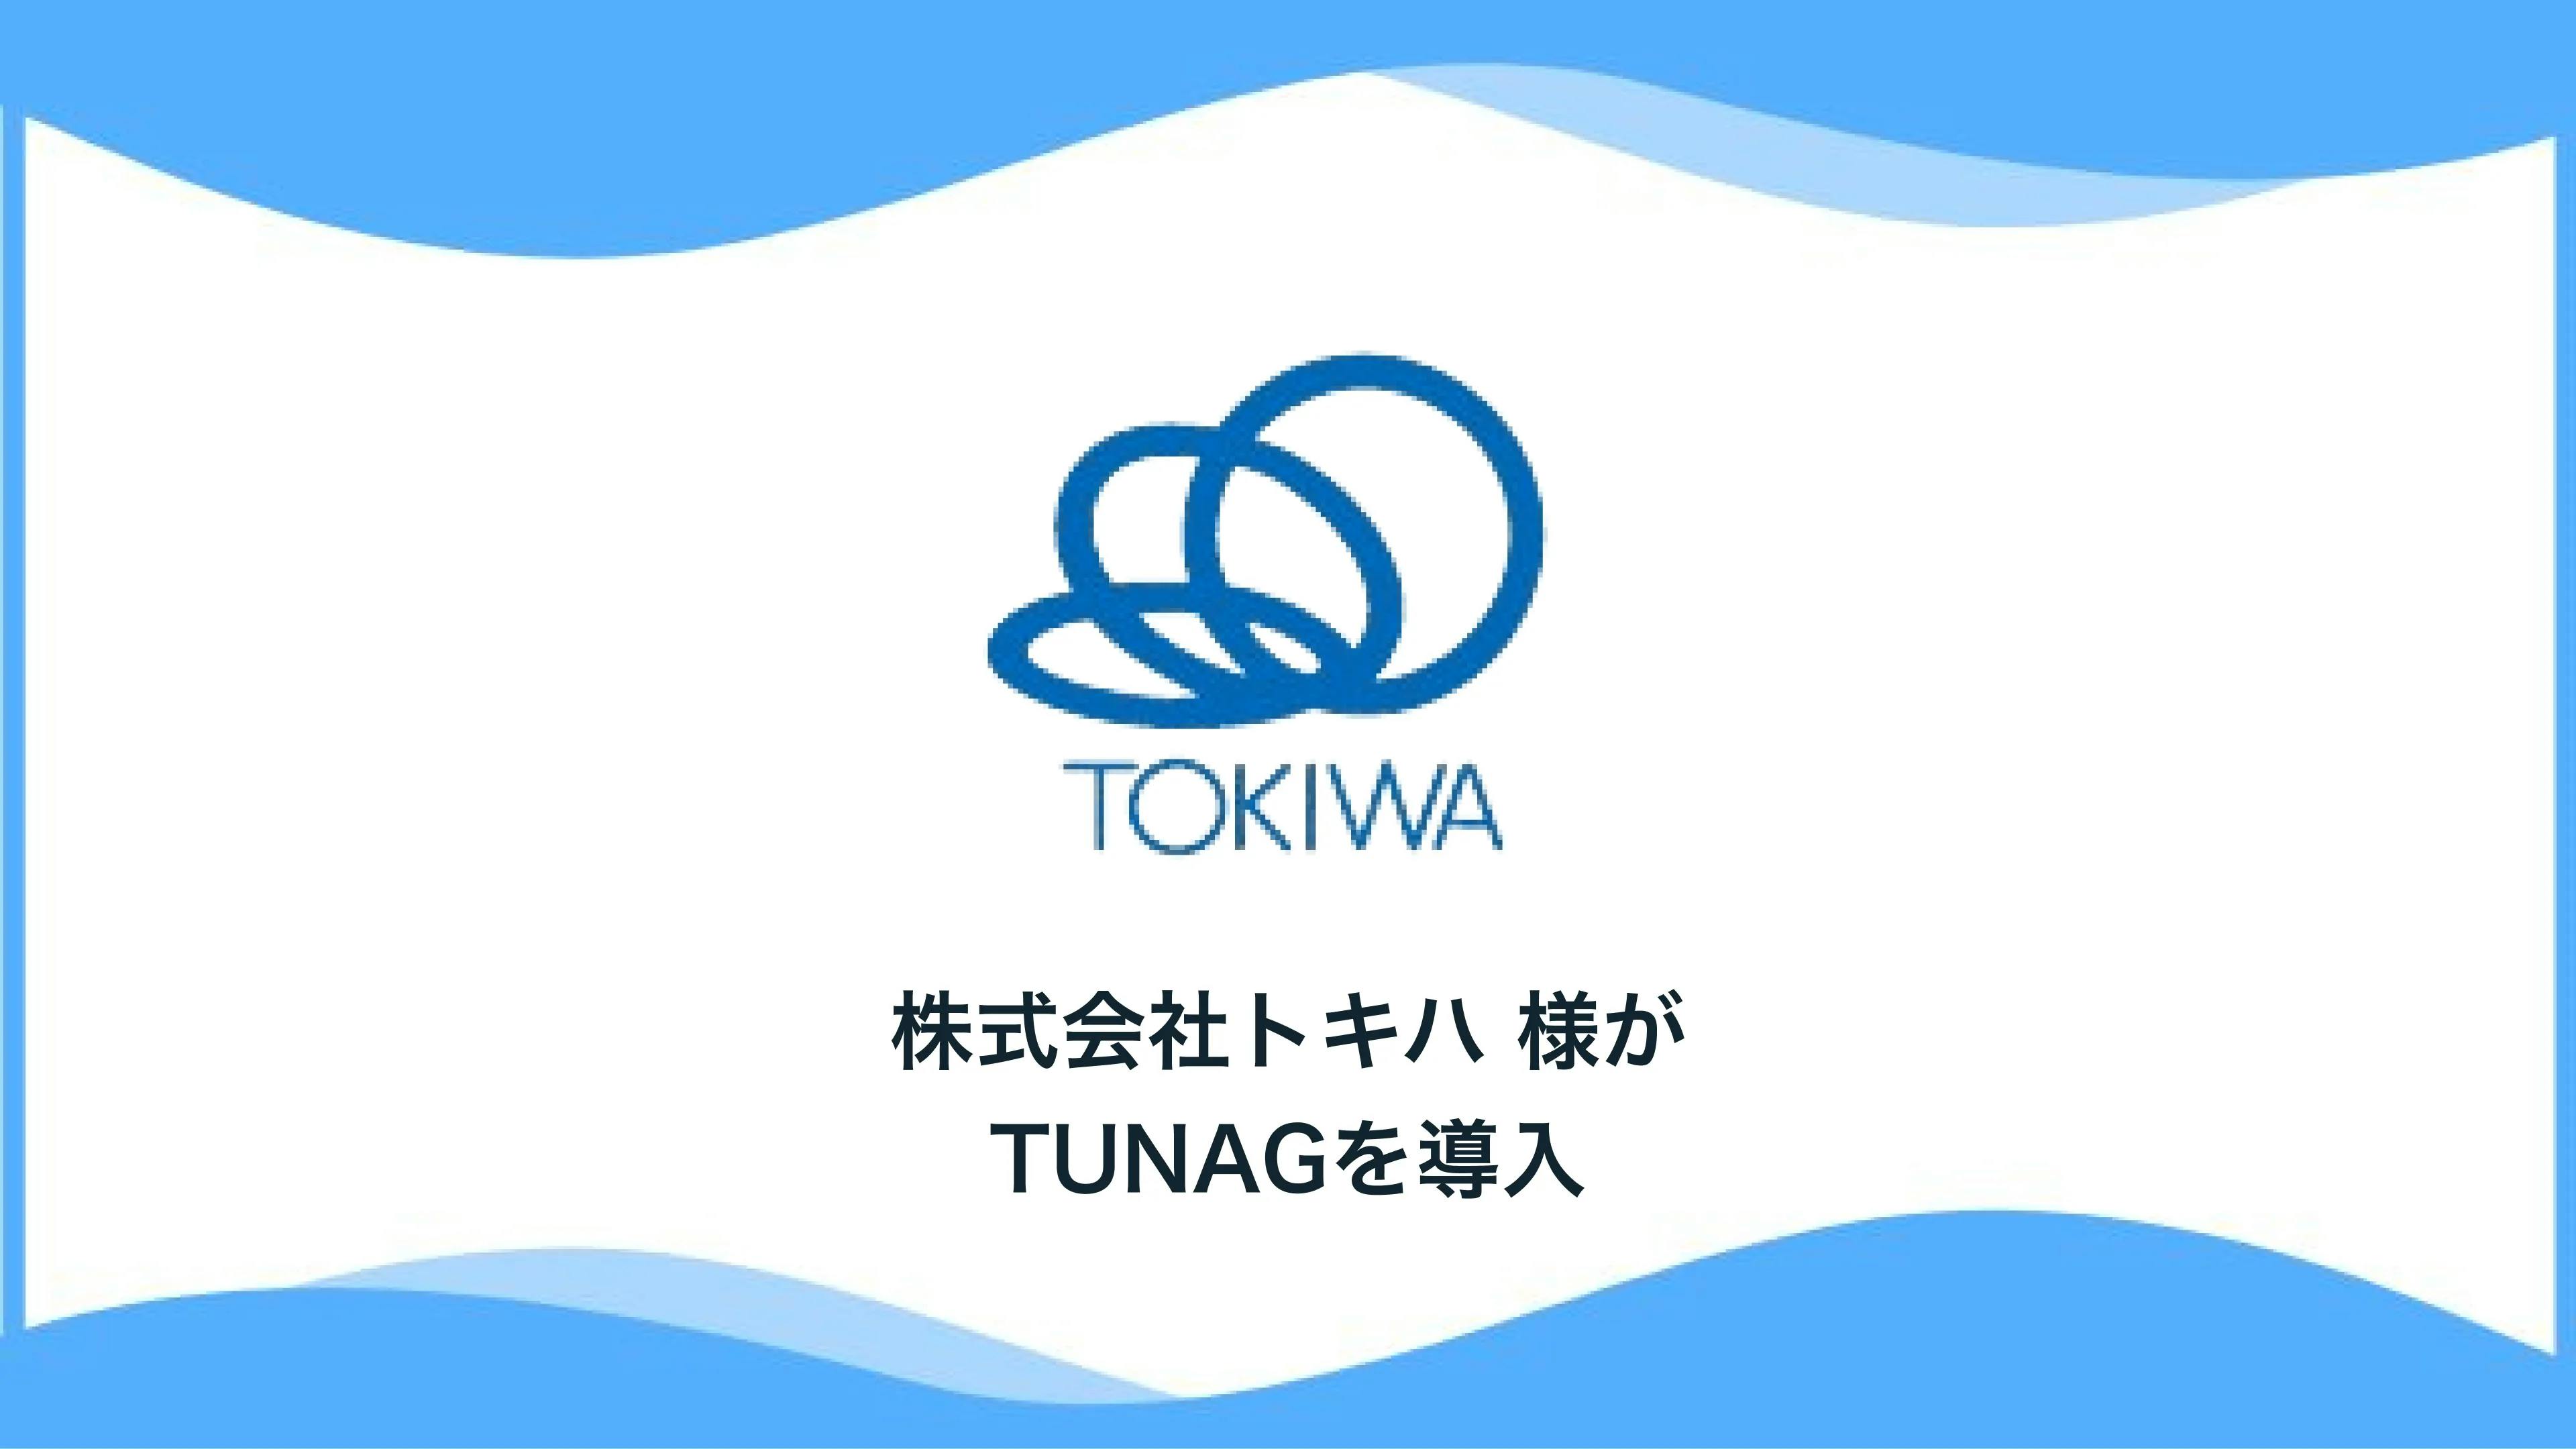 1935年の創立以来、百貨店業などで「ふるさと大分」に貢献してきた 株式会社トキハ様、「TUNAG」を導入